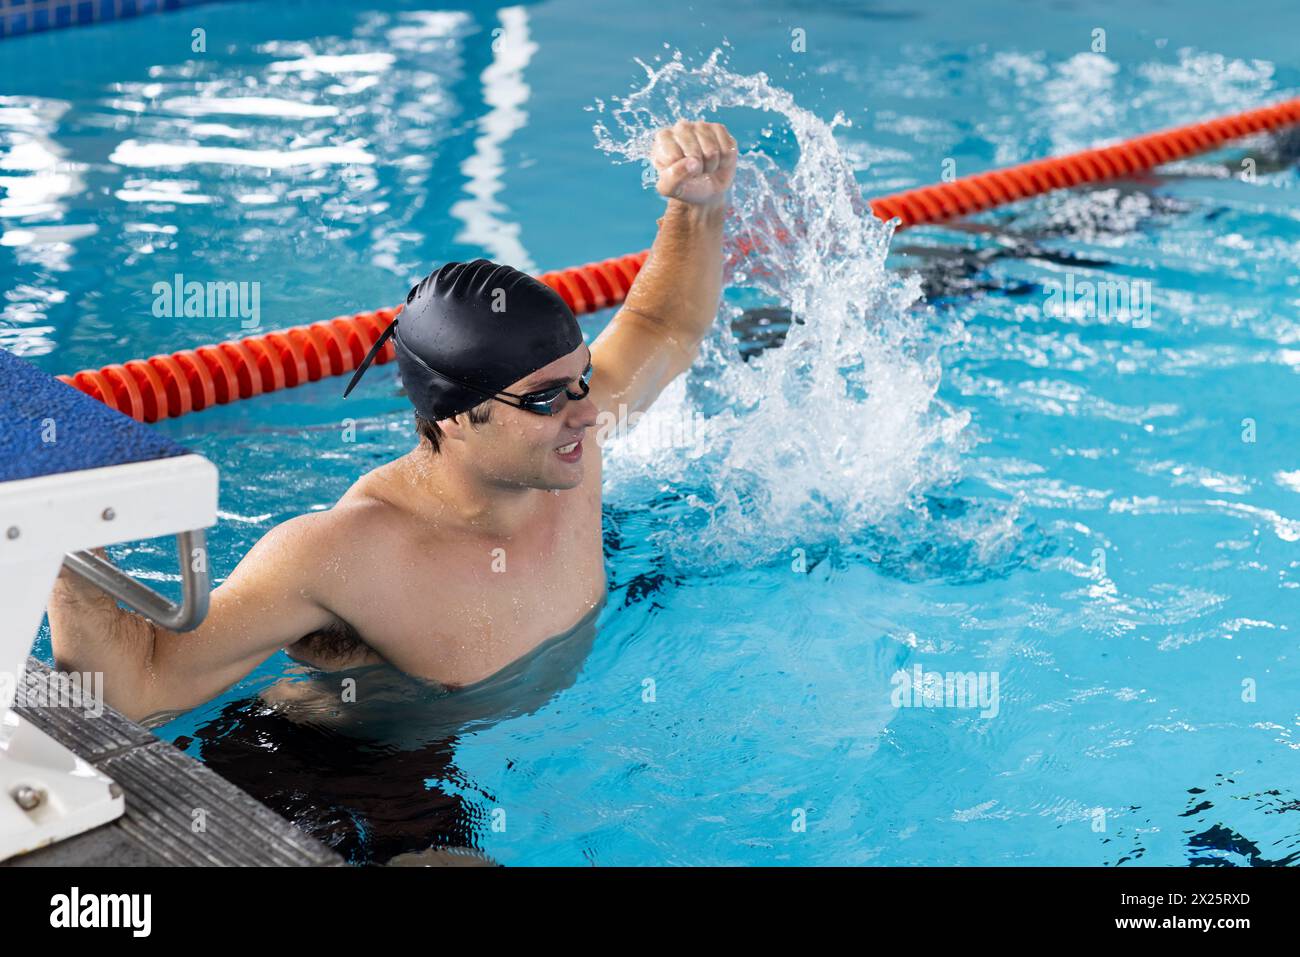 Jeune nageur masculin caucasien célébrant à l'intérieur dans la piscine, éclaboussant de l'eau Banque D'Images